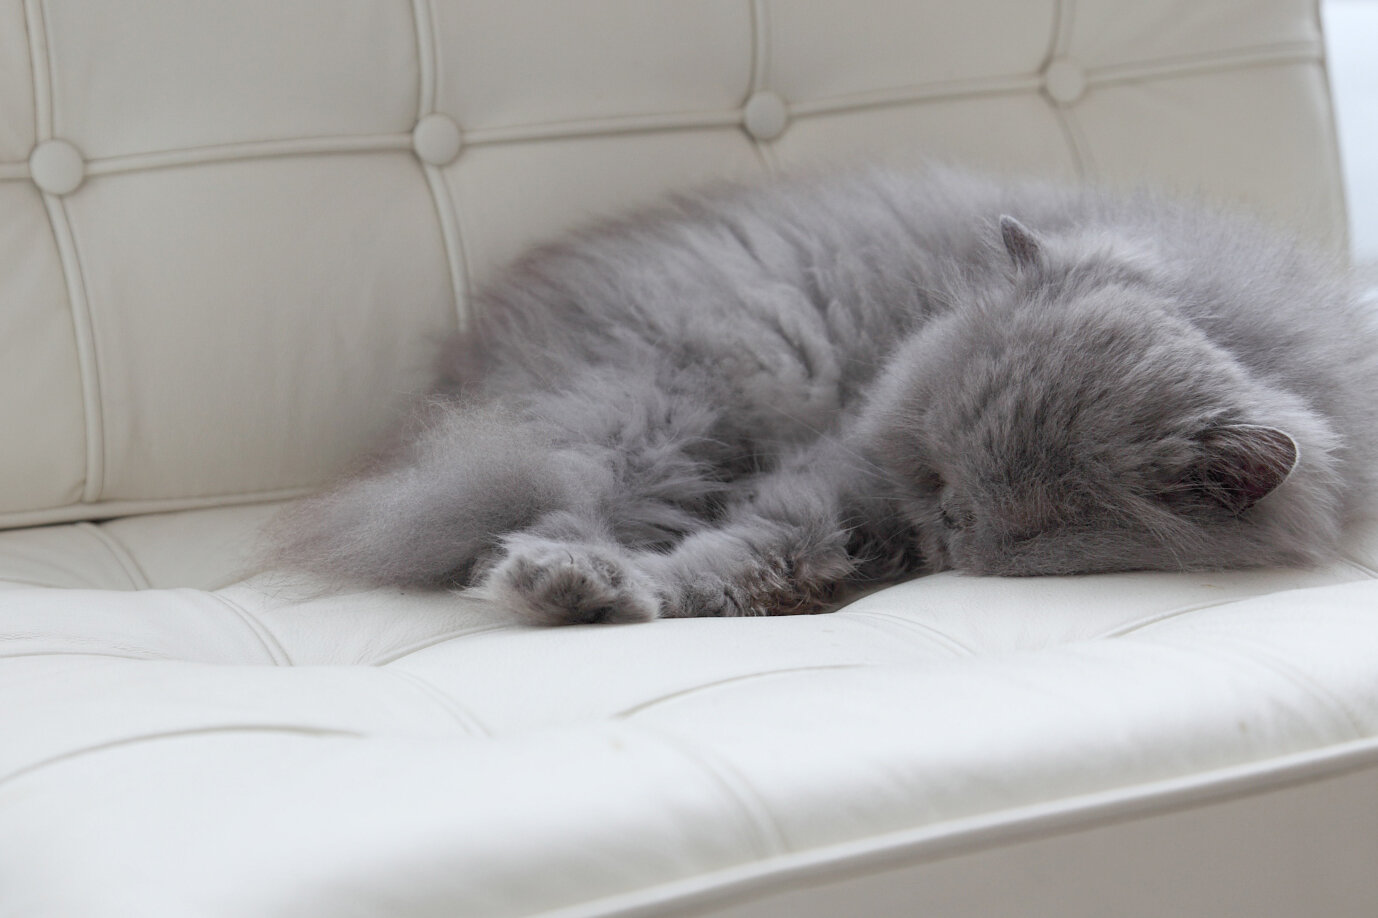 Sleeping_cat_crop.JPG